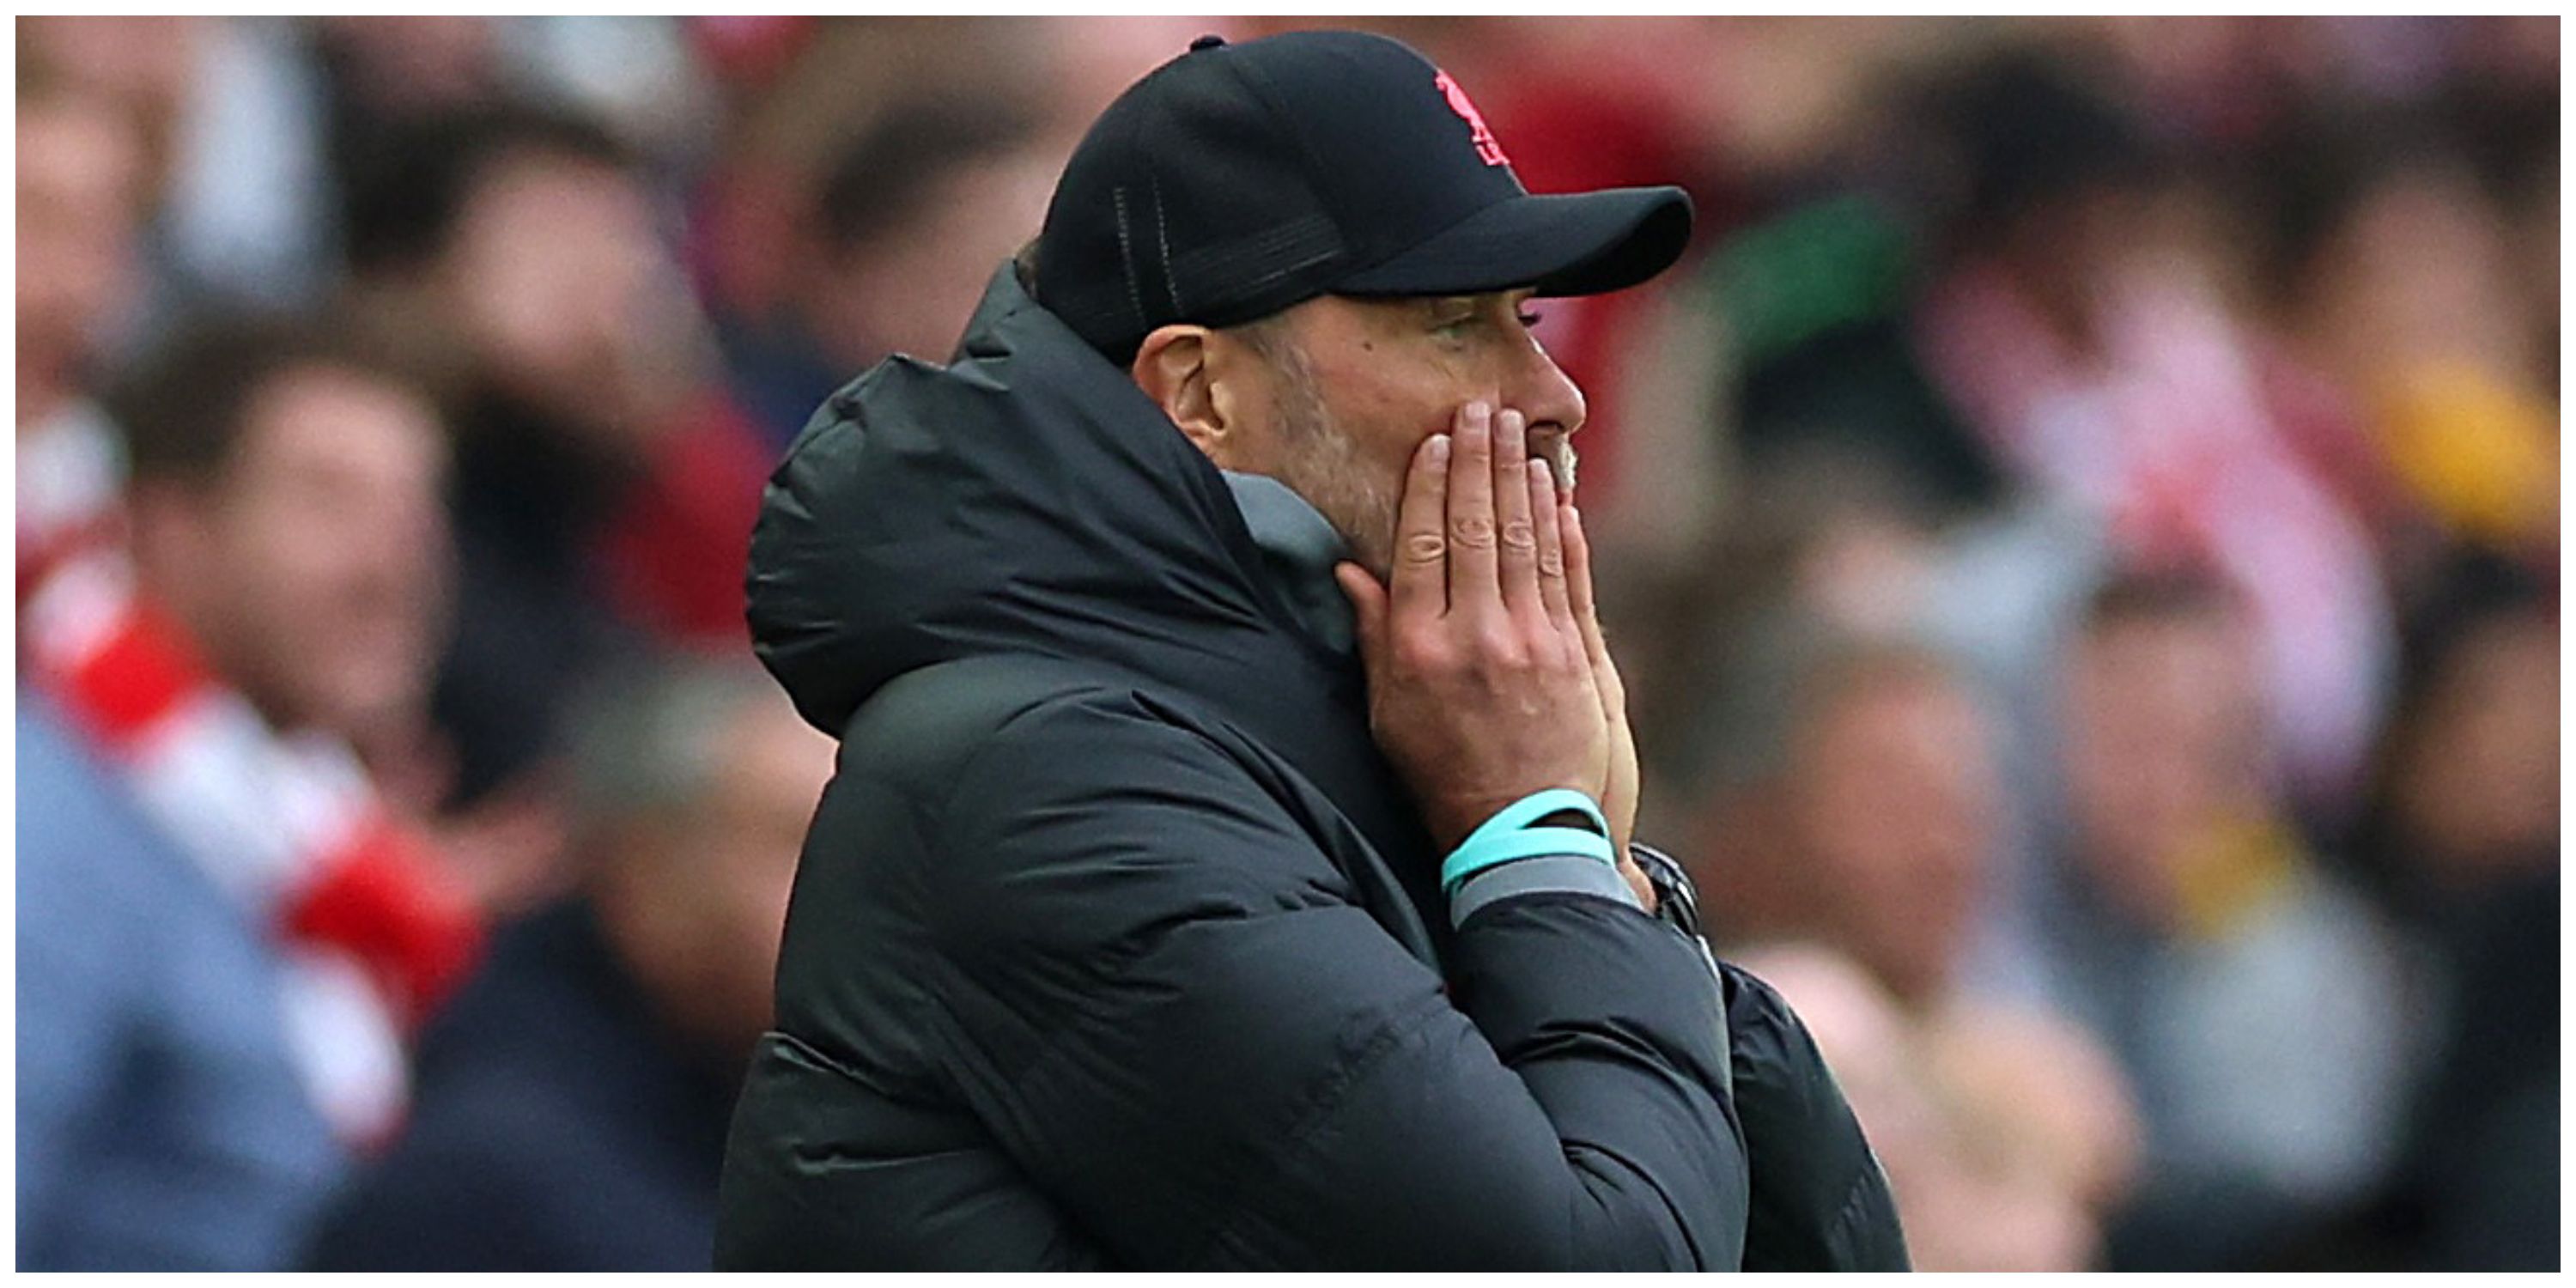 Liverpool manager Jurgen Klopp in disbelief